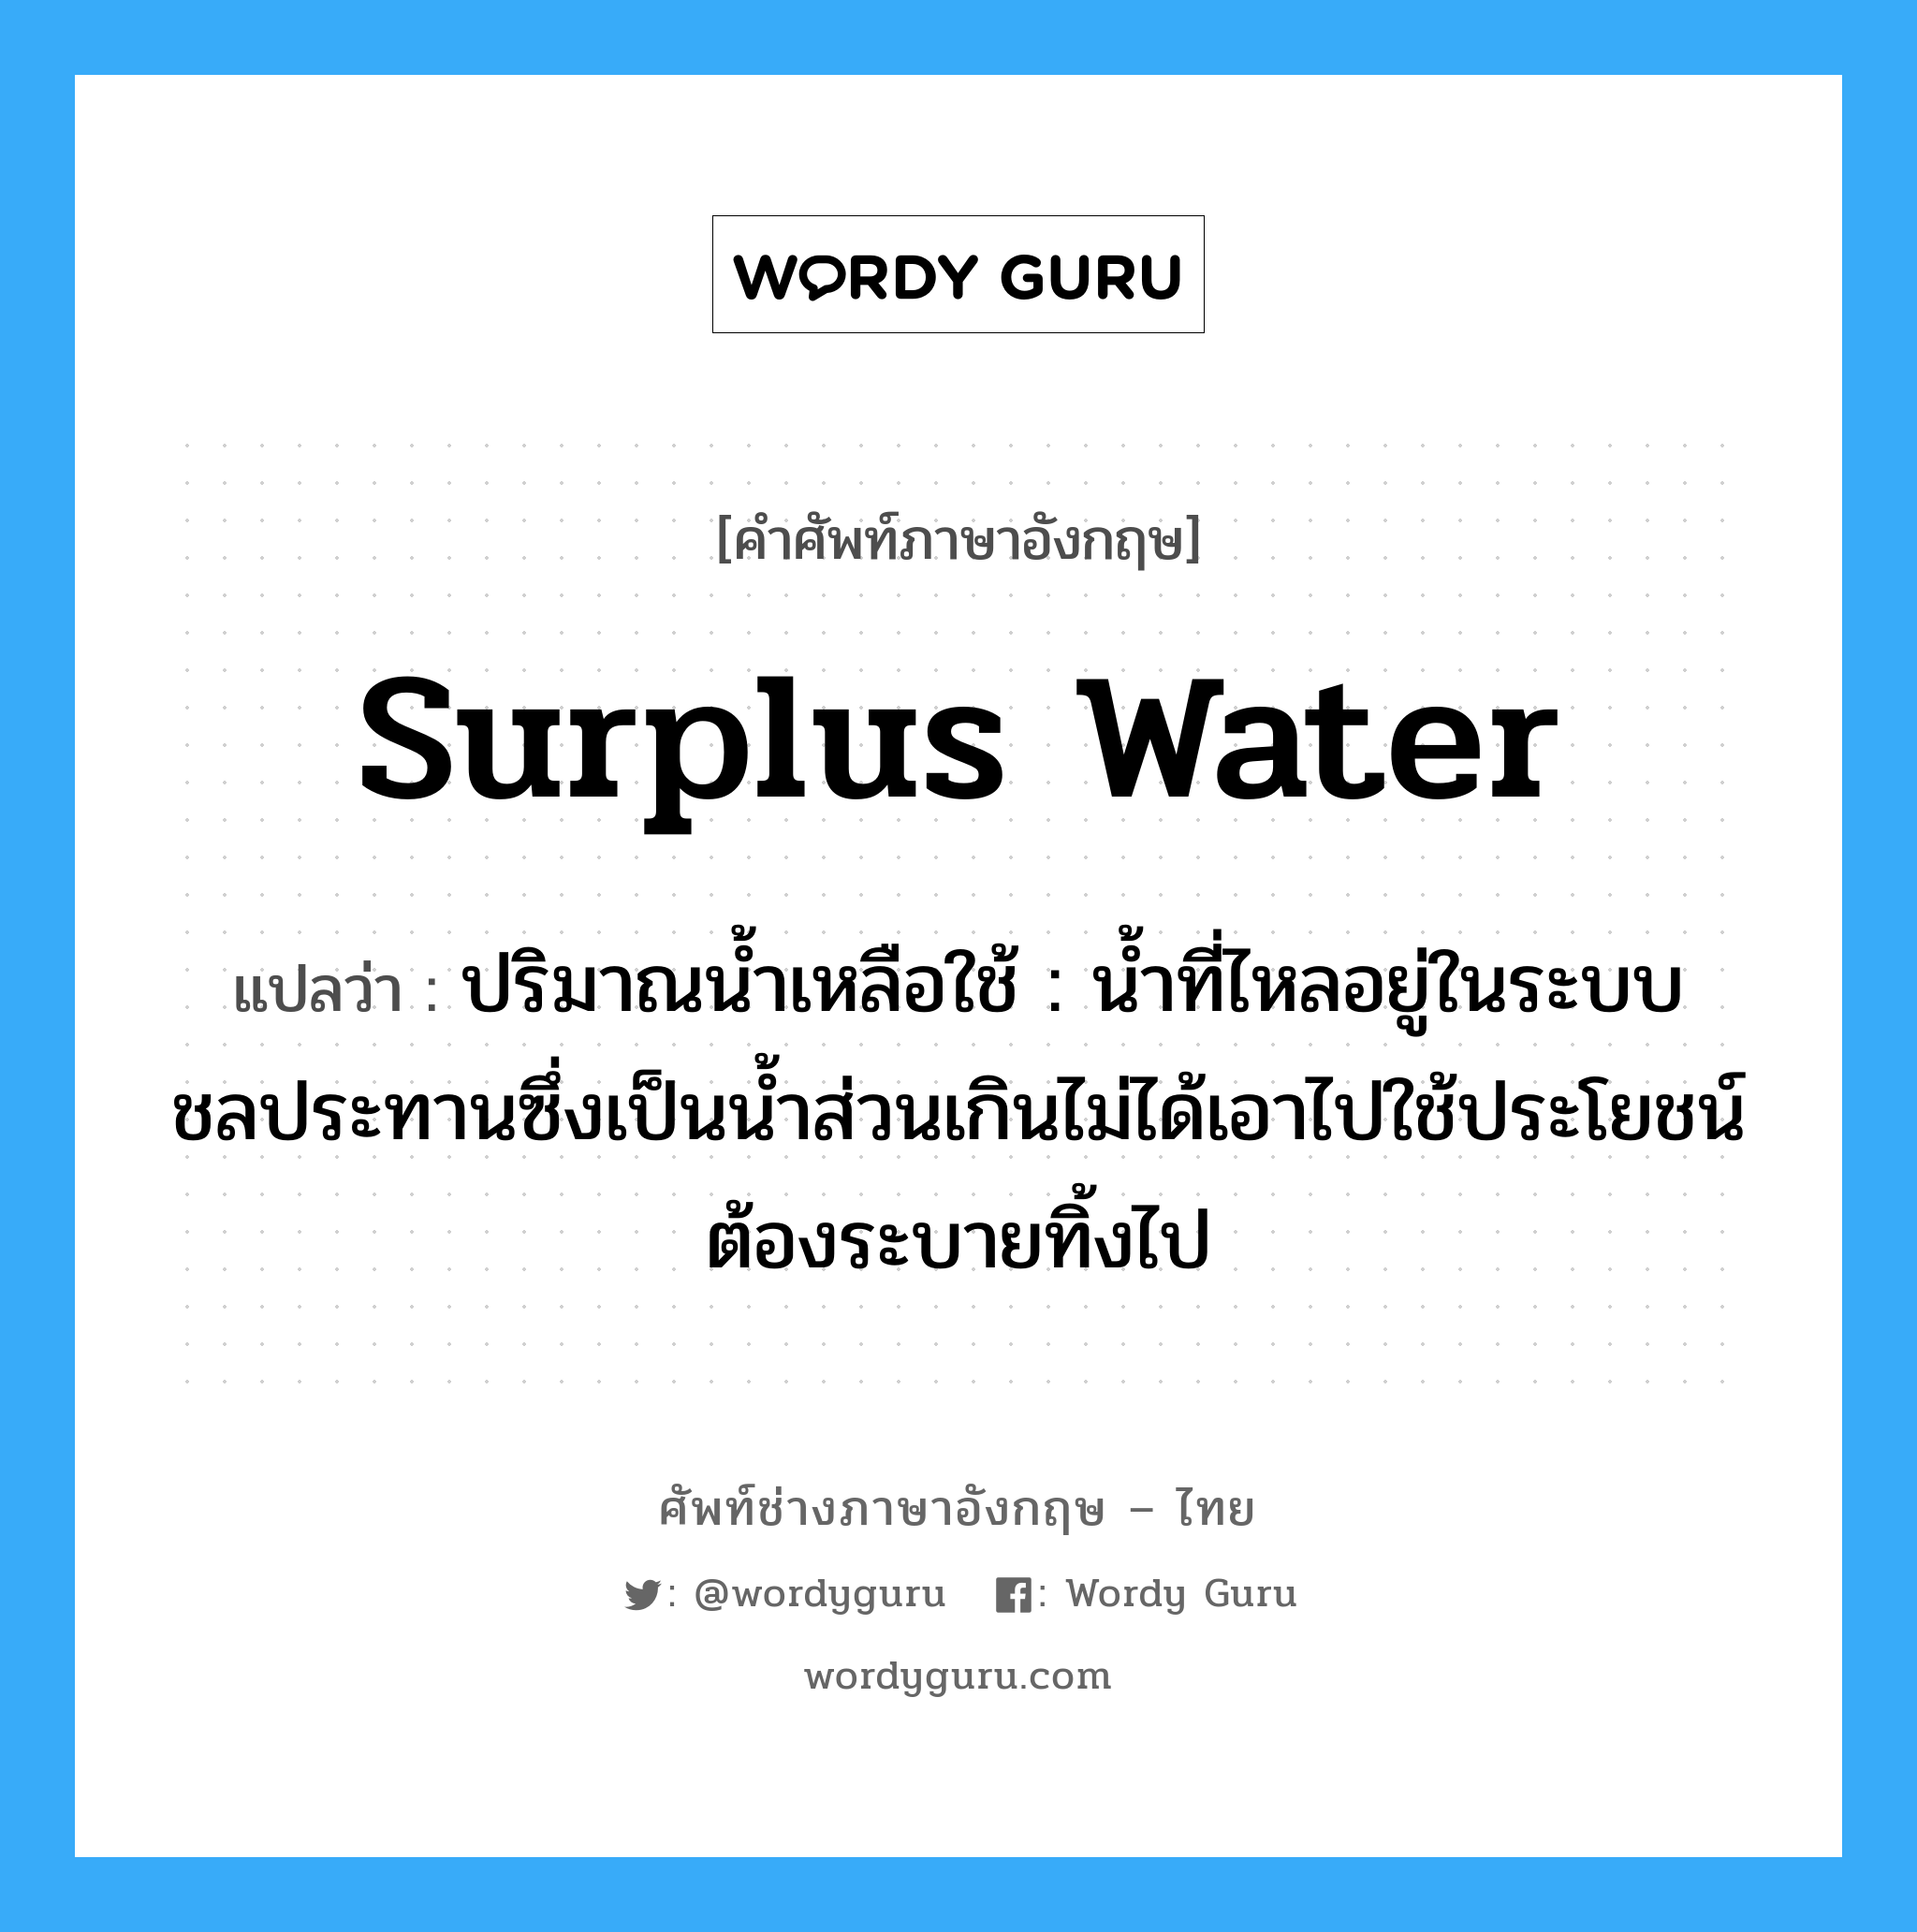 surplus water แปลว่า?, คำศัพท์ช่างภาษาอังกฤษ - ไทย surplus water คำศัพท์ภาษาอังกฤษ surplus water แปลว่า ปริมาณน้ำเหลือใช้ : น้ำที่ไหลอยู่ในระบบชลประทานซึ่งเป็นน้ำส่วนเกินไม่ได้เอาไปใช้ประโยชน์ต้องระบายทิ้งไป